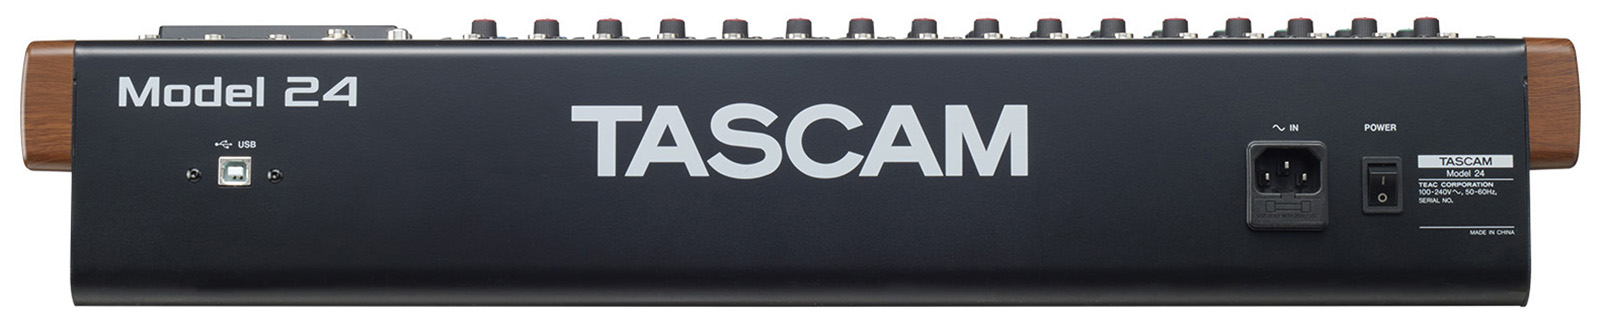 Tascam Model 24 - Analoge Mengtafel - Variation 2